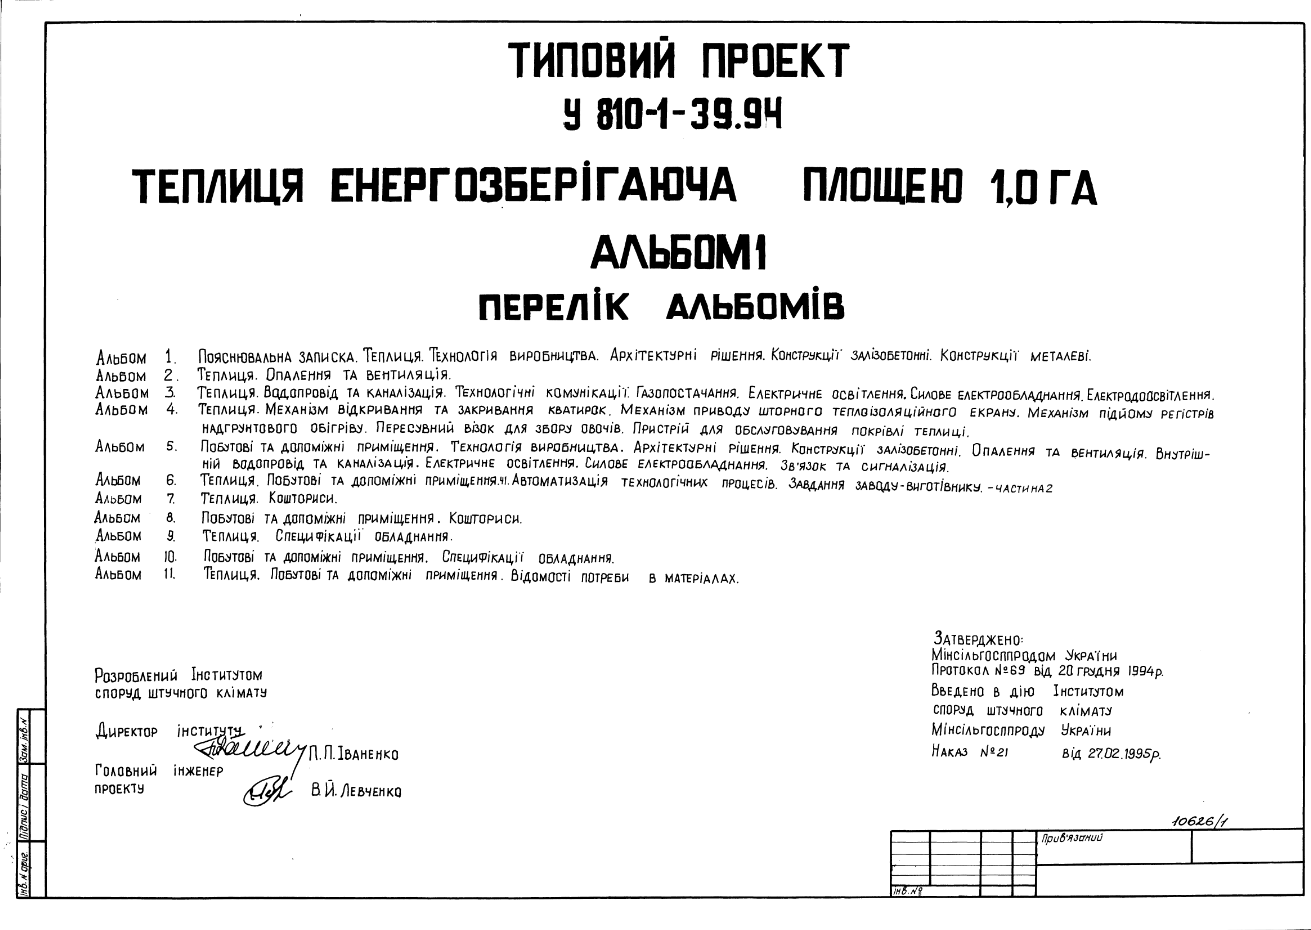 Состав Типовой проект У.810-1-39.94 Теплица энергосберегающая площадью 1,0 га (Украинский язык)